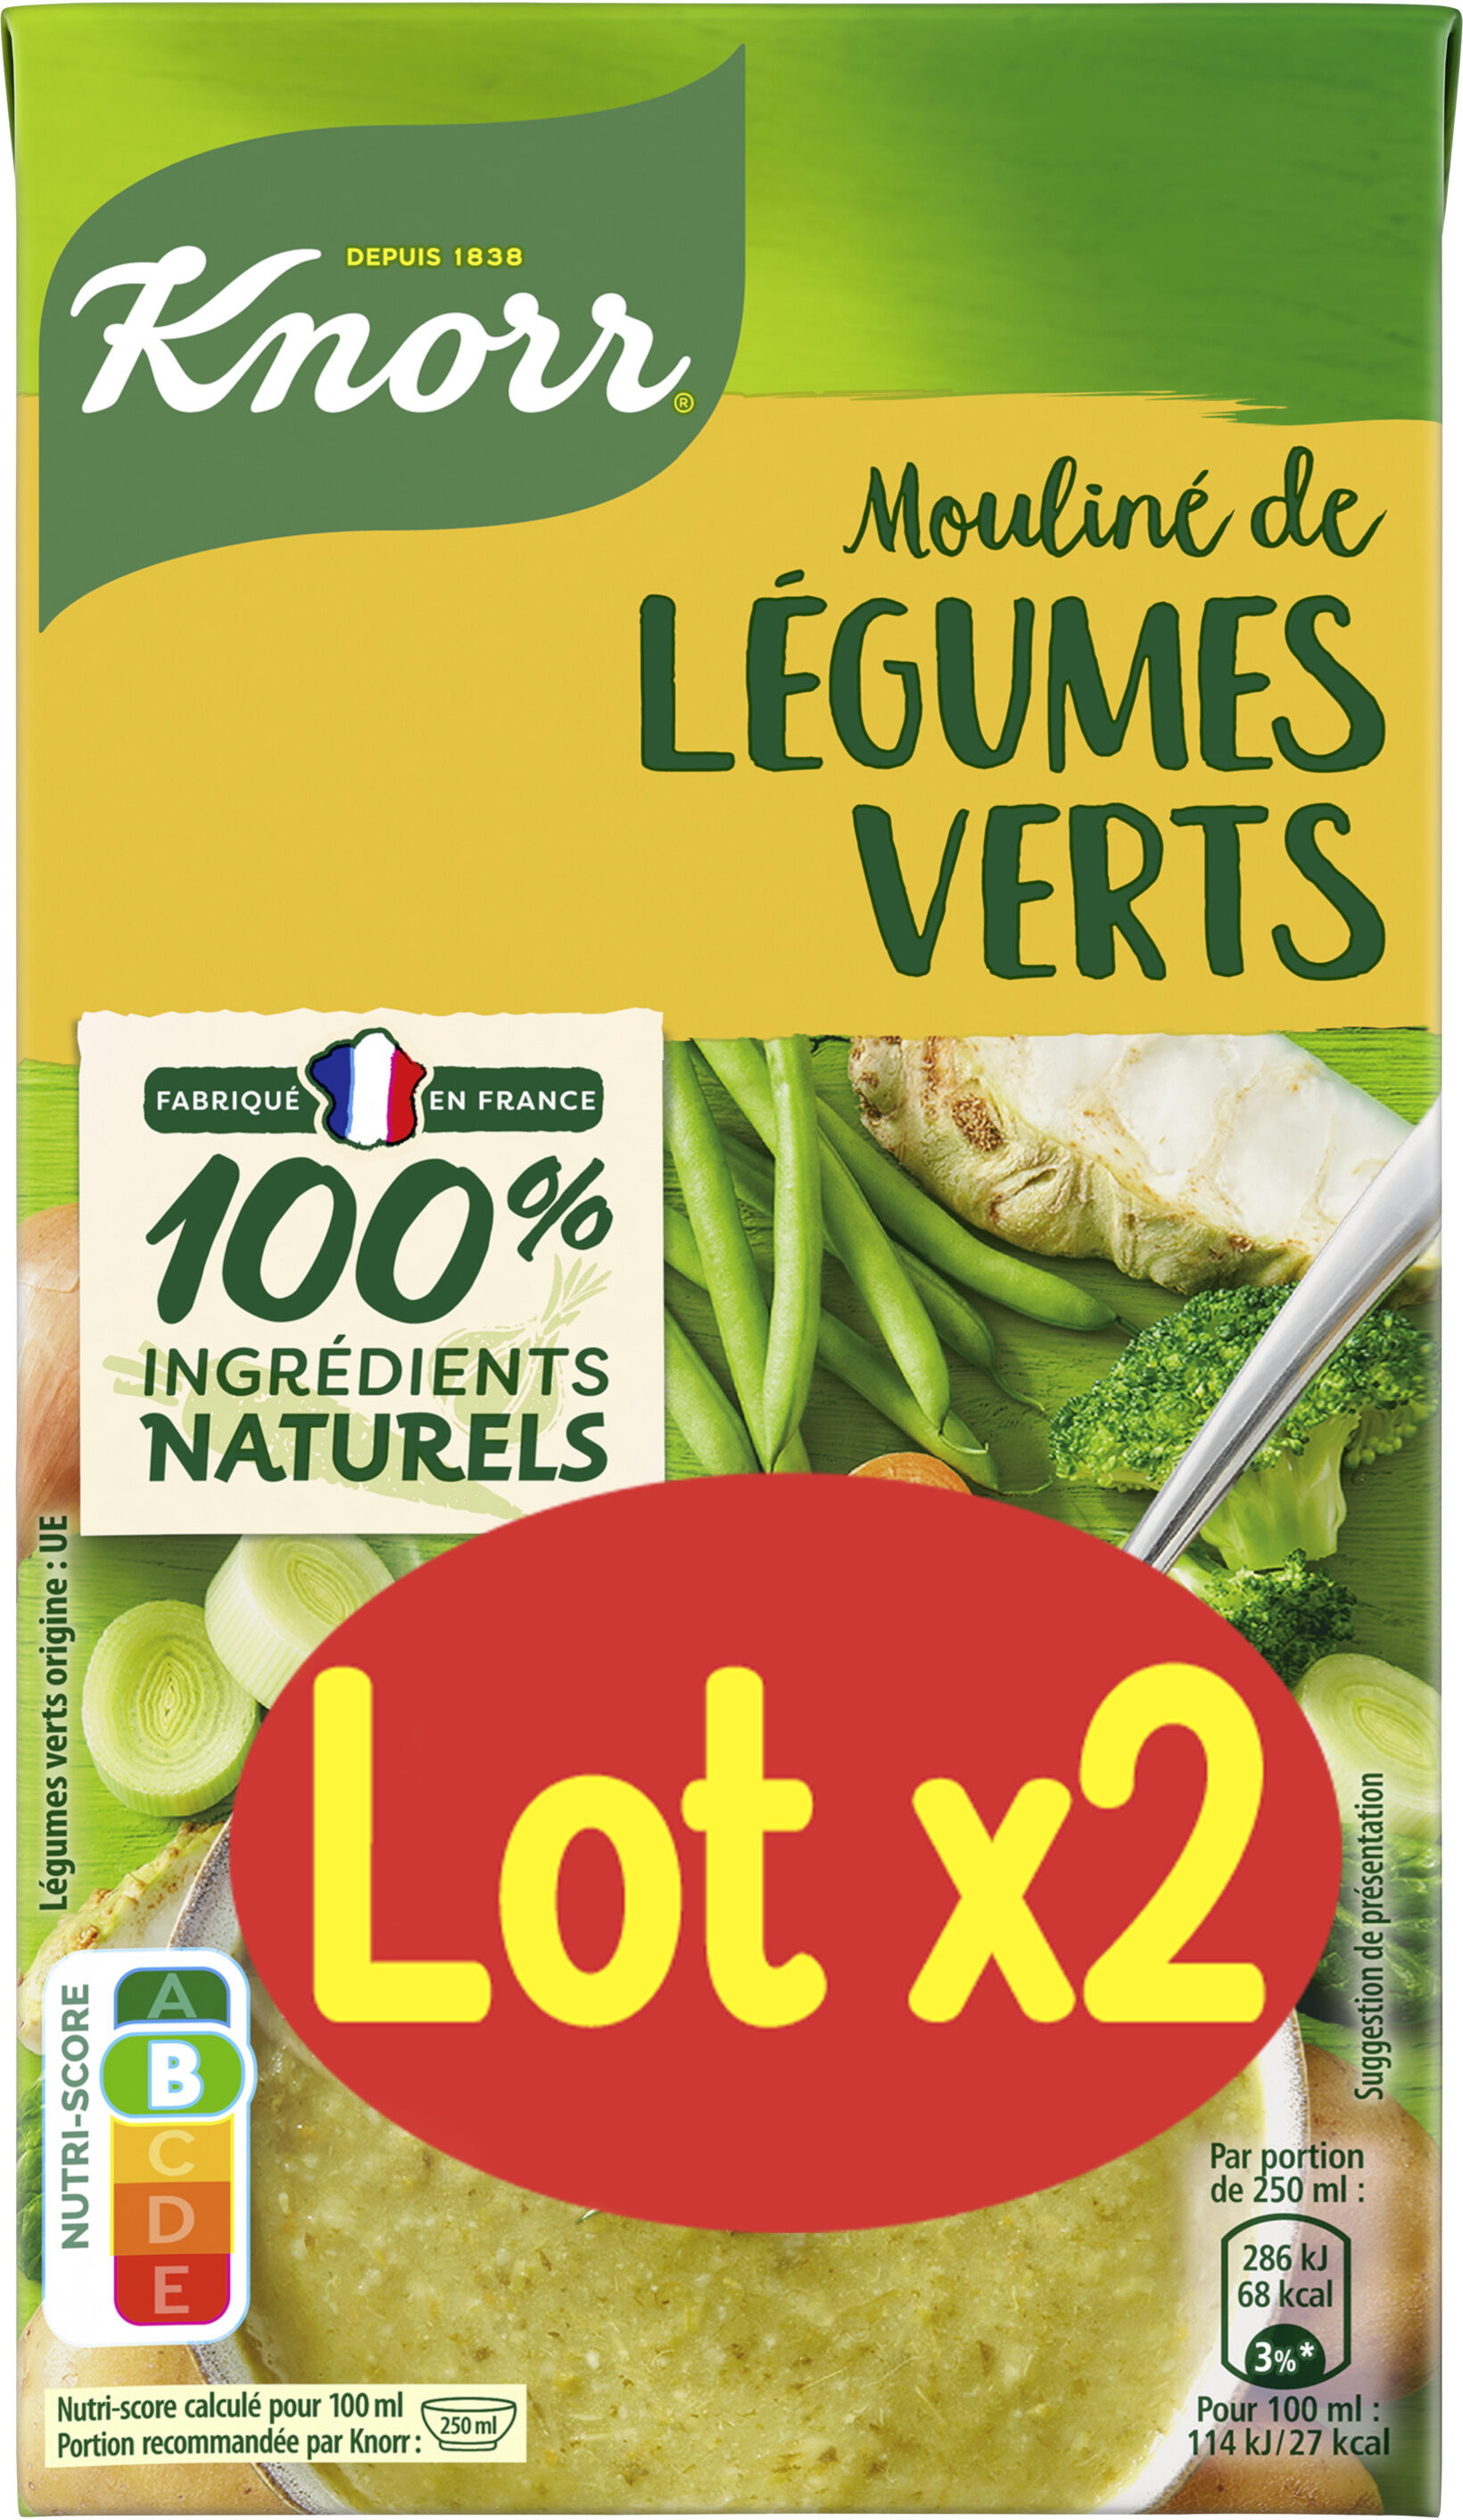 Knorr Soupe Liquide Mouliné de Légumes Verts Lot 2x1L - Produkt - fr